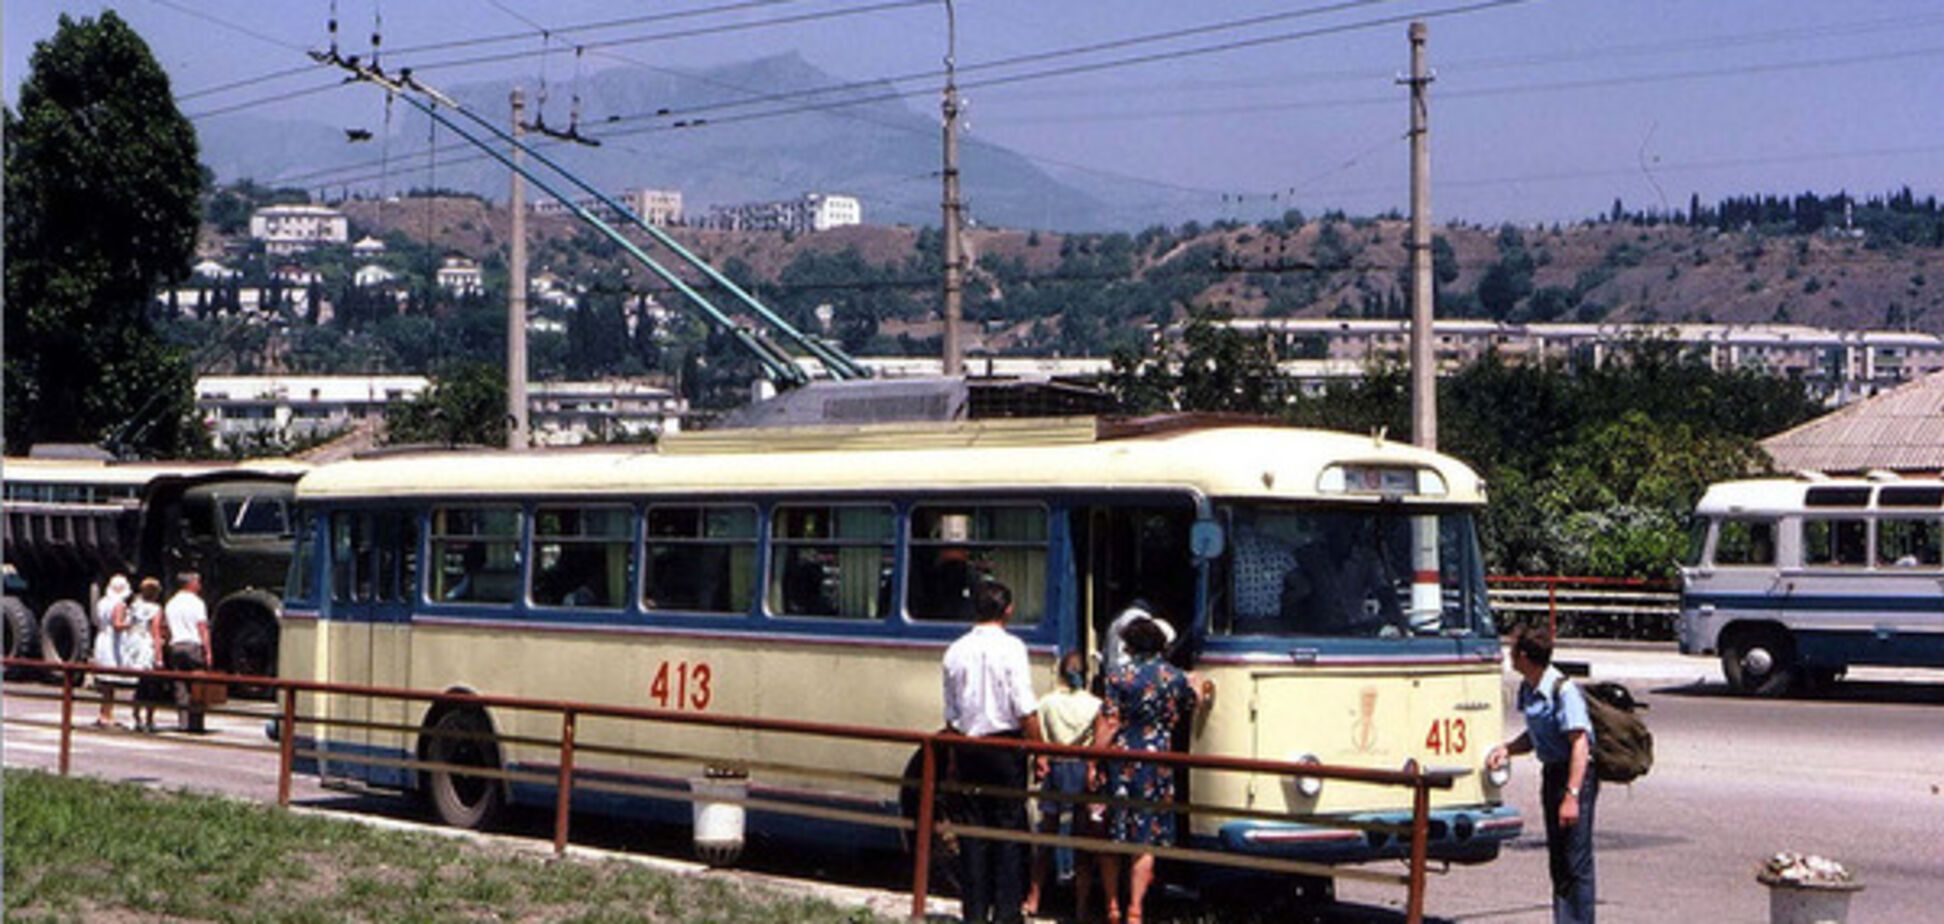 Из Симферополя в Ялту: троллейбусное путешествие в фотографиях 1973 года